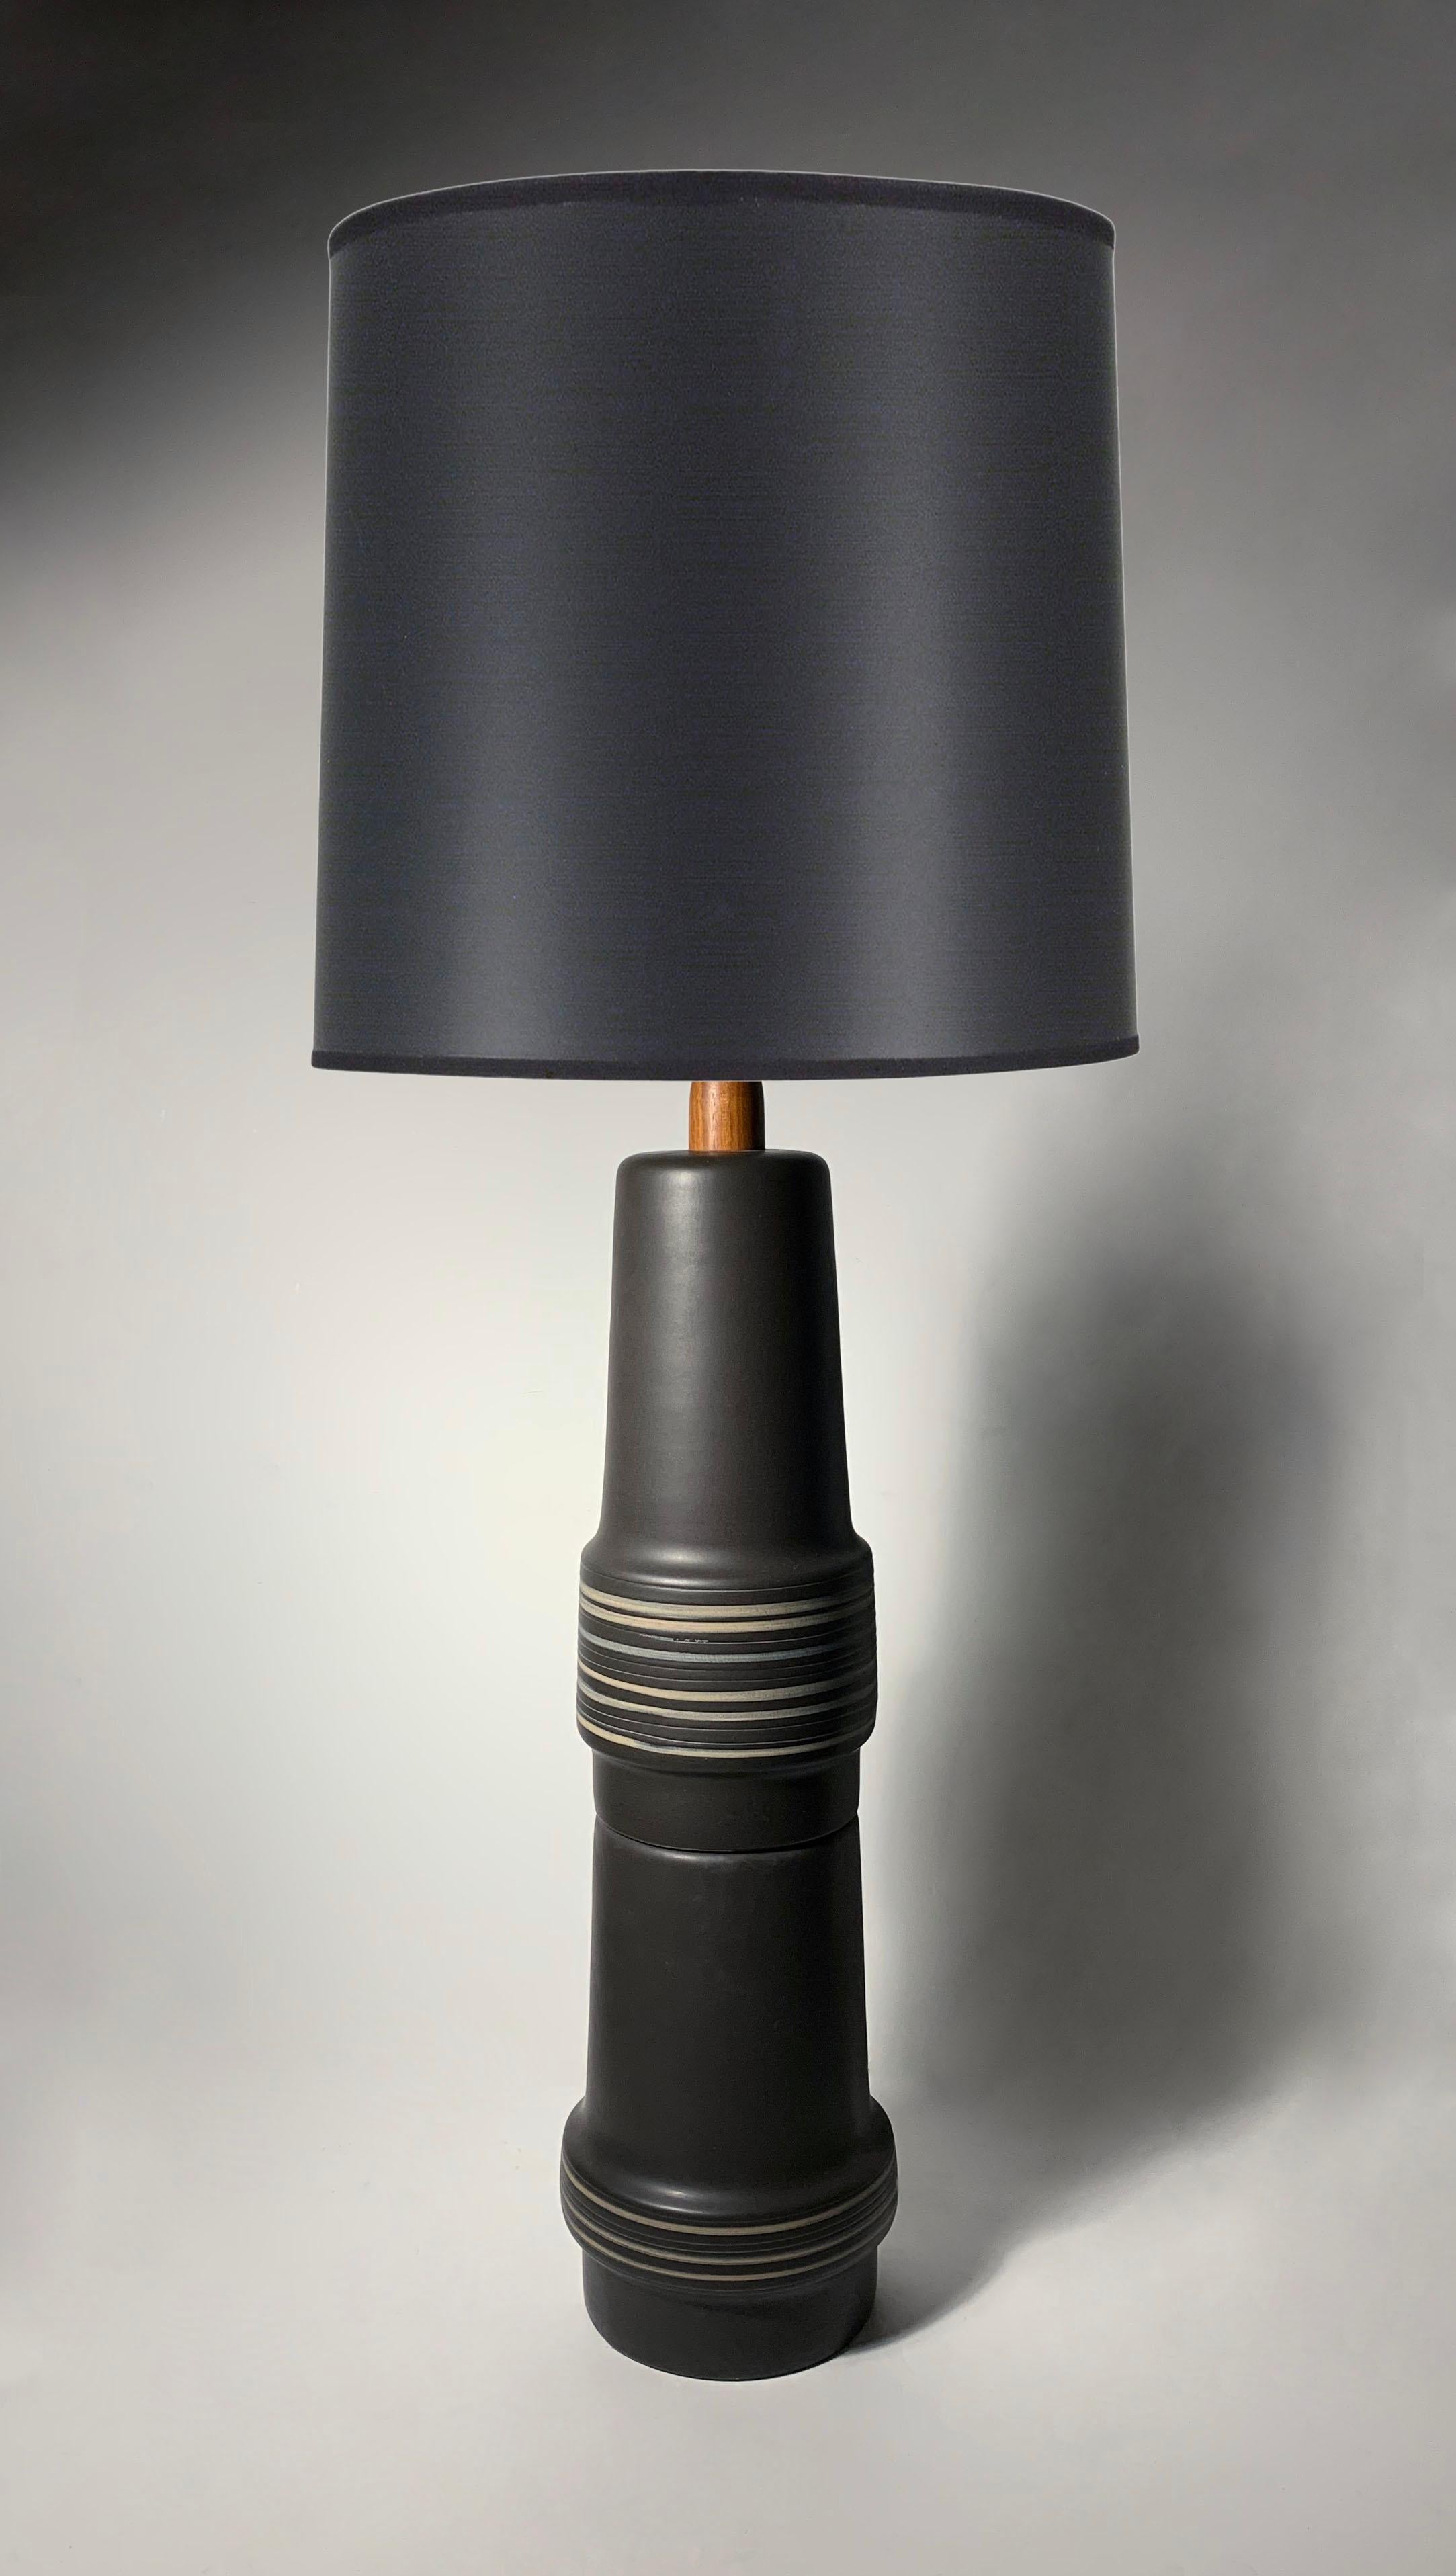 Lampe de table empilée Gordon & Jane Martz du milieu du siècle dernier en céramique noire

Comprend l'abat-jour blanc d'origine illustré dans la photo. La teinte noire n'est utilisée qu'à des fins d'affichage. 